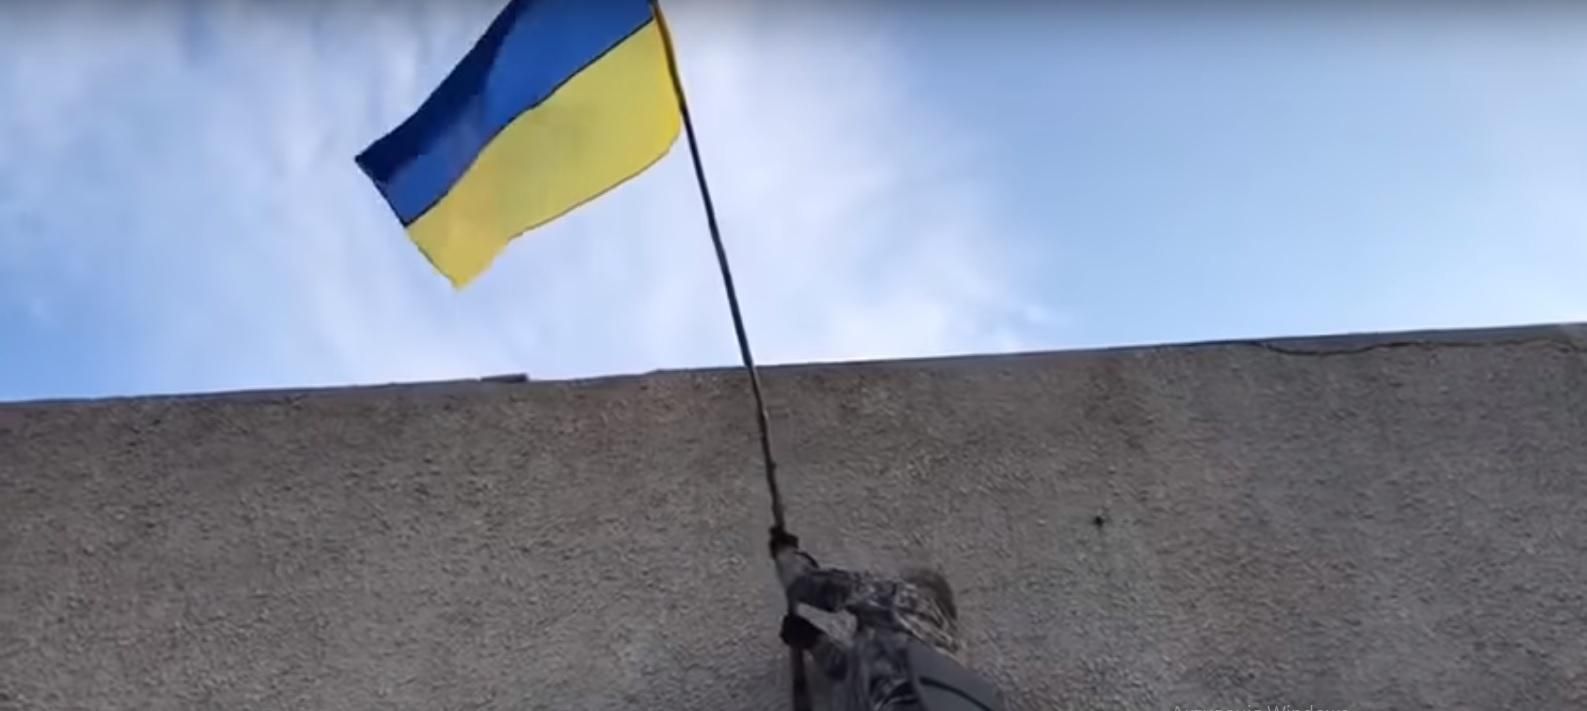 Звільнення Золотого-4: у мережі опублікували щемливе відео підняття українського прапора 